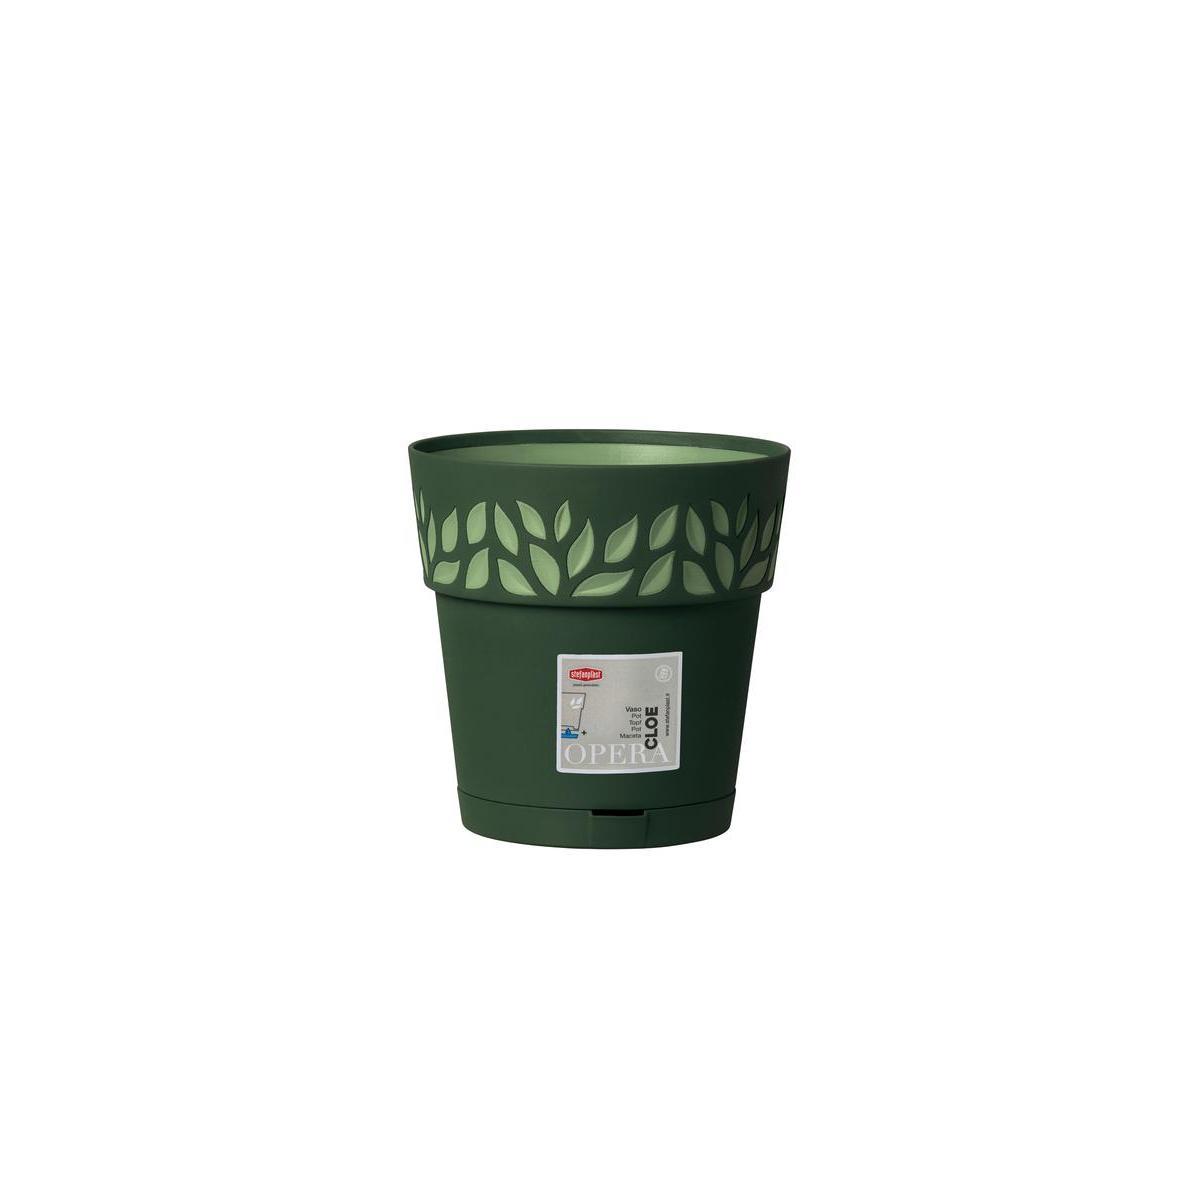 Pot Cloé - 3.2 L - Vert